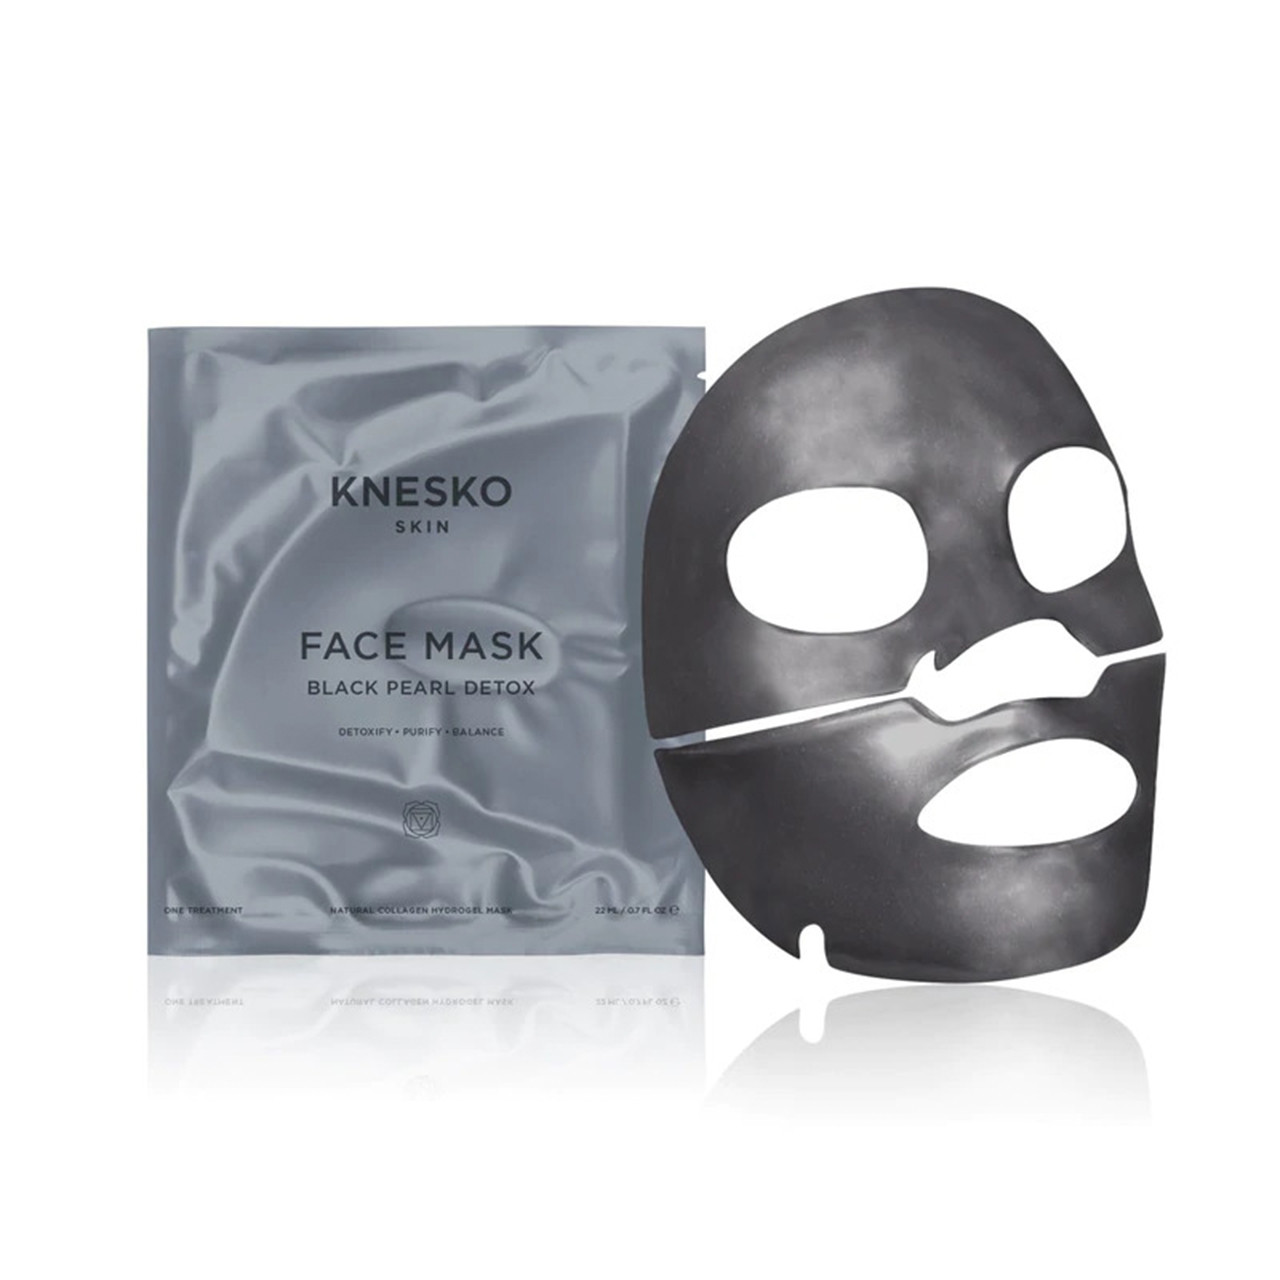 Knesko Skin Black Pearl Detox Face Mask - 4 Pk.